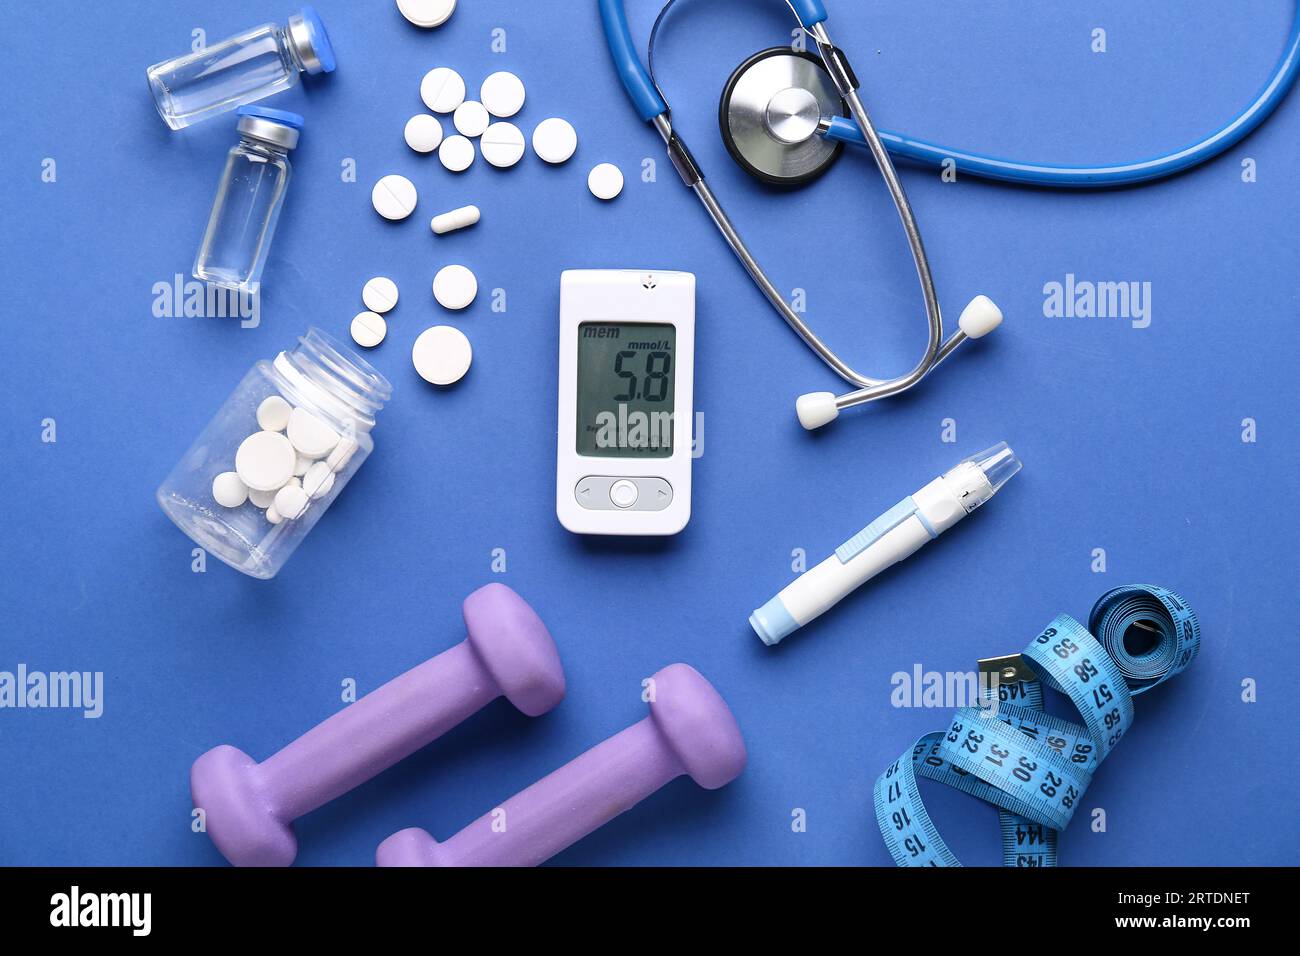 Zusammensetzung mit Glucometer, Lanzette, Medizin und Kurzhanteln auf blauem Hintergrund. Diabetes-Konzept Stockfoto